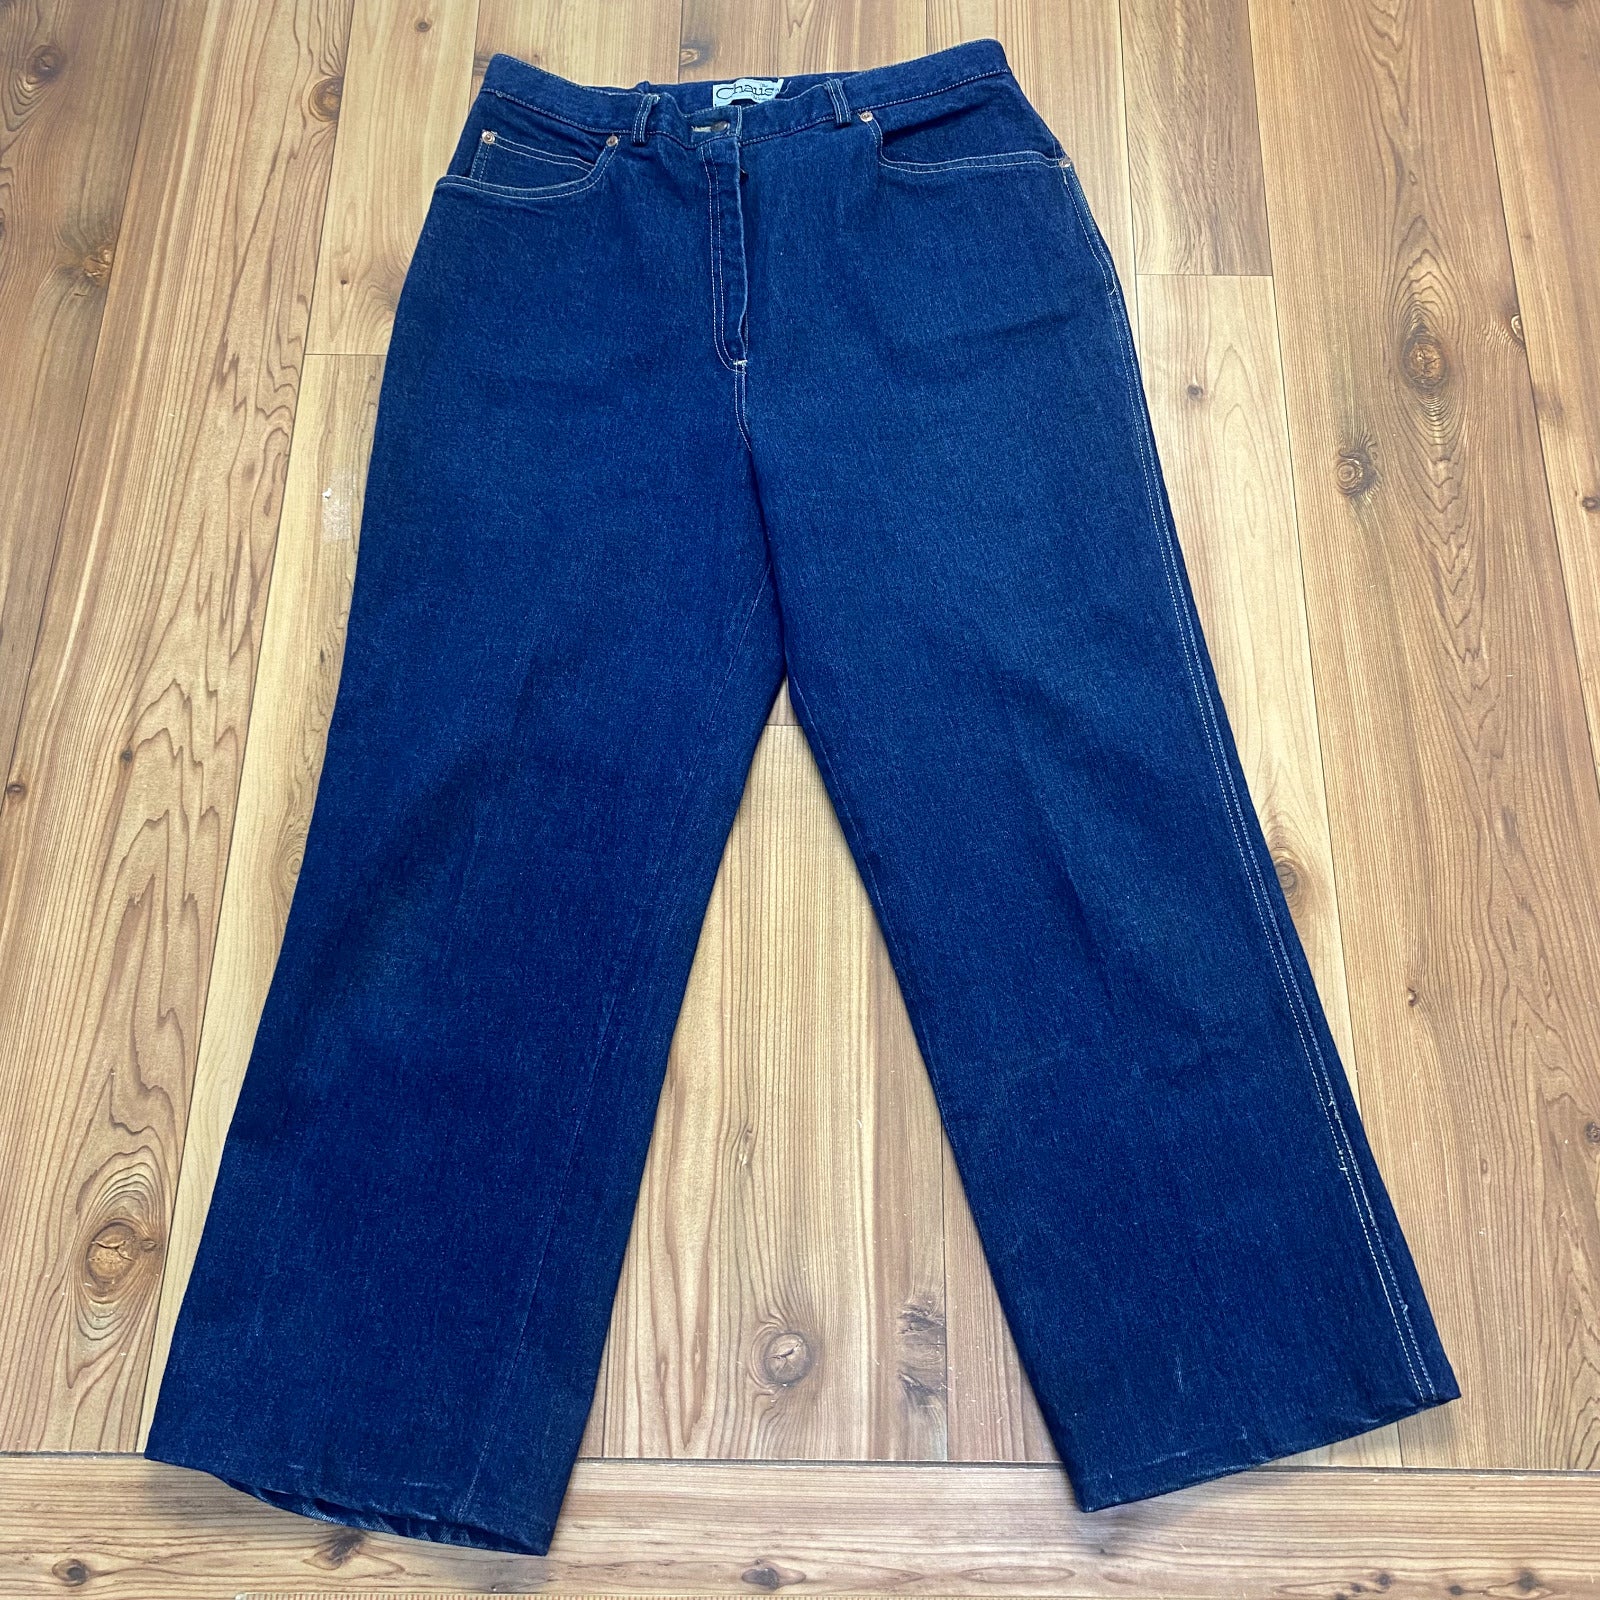 Vintage The Chaus Blue Denim Regular Fit Cotton Jeans Women's Size 34